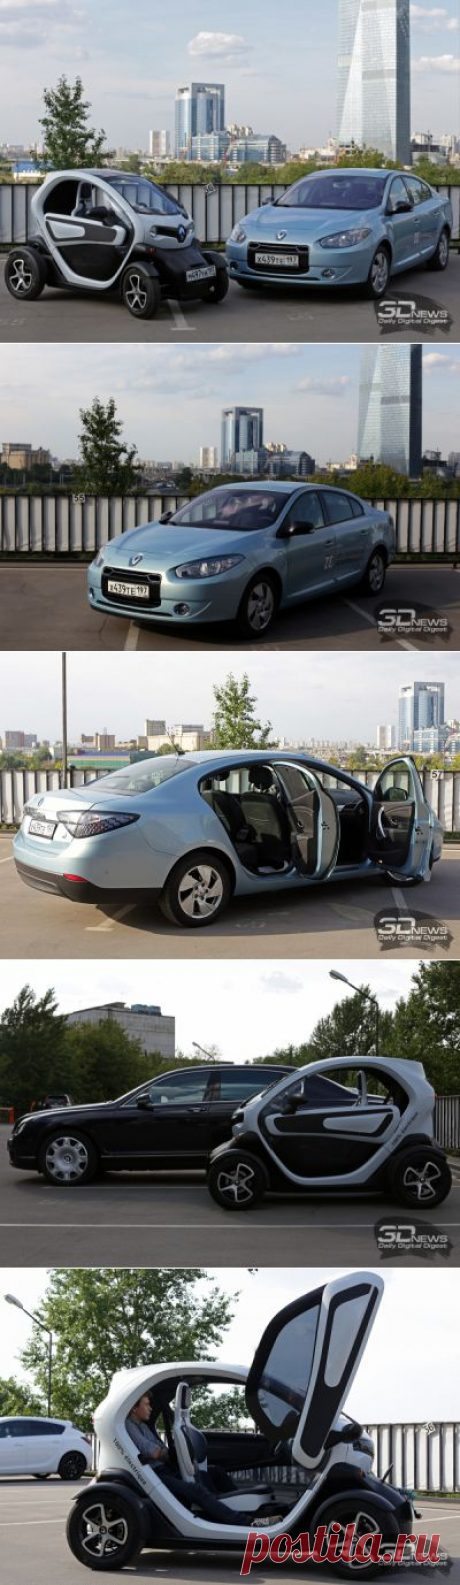 Обзор электромобилей Renault Twizy и Fluene Z.E.: как стать звездой дорог / Цифровой автомобиль / 3DNews - Daily Digital Digest